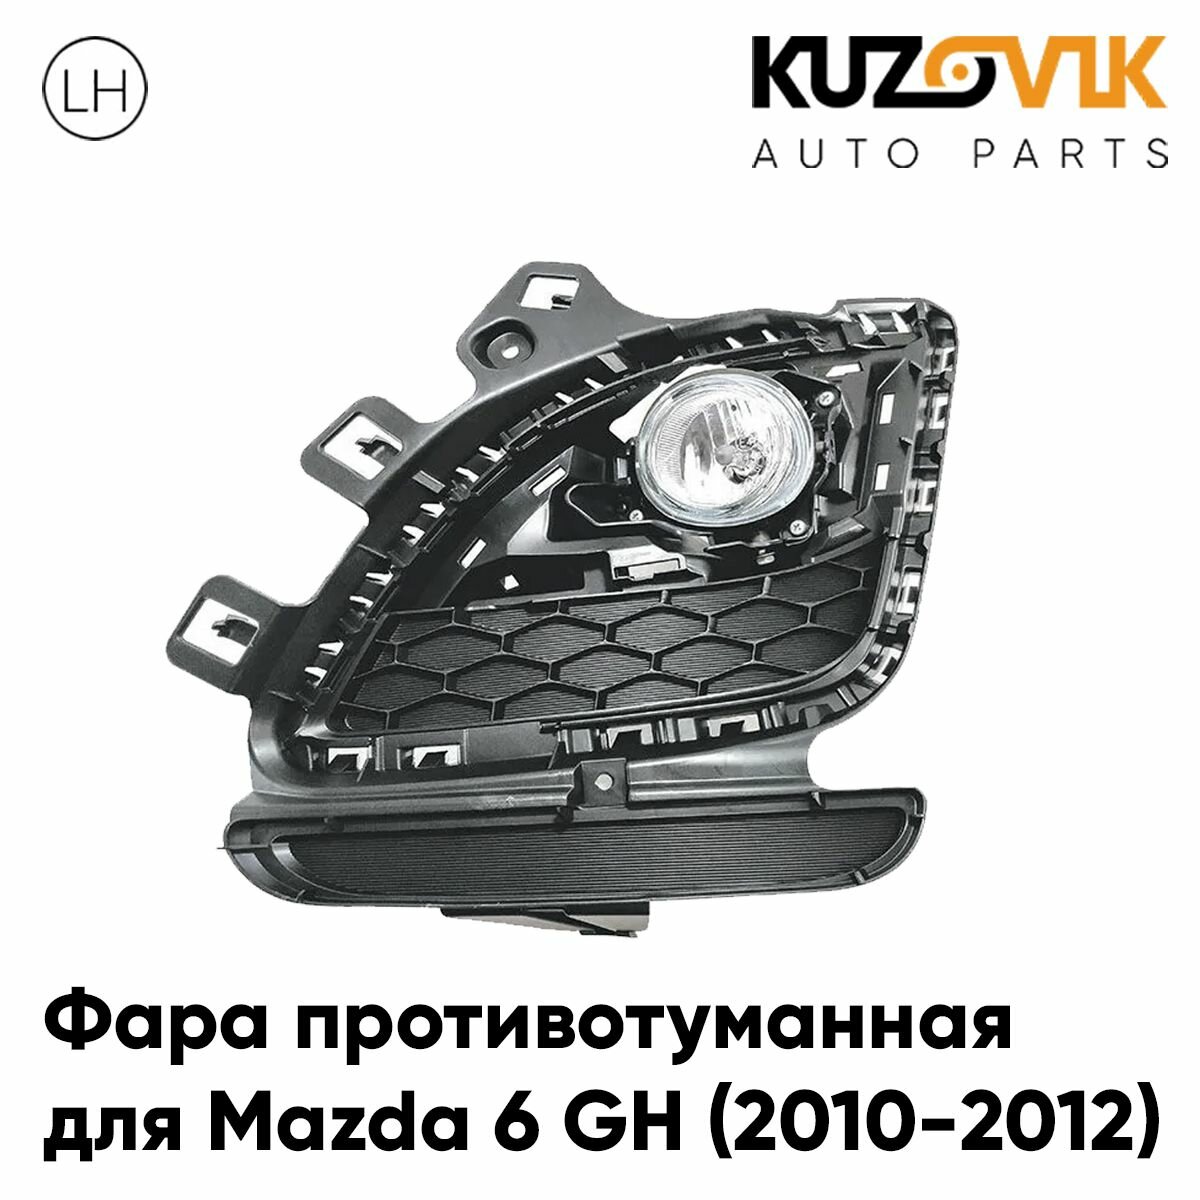 Фара противотуманная для Мазда Mazda 6 GH (2010-2012) рестайлинг левая, туманка, птф